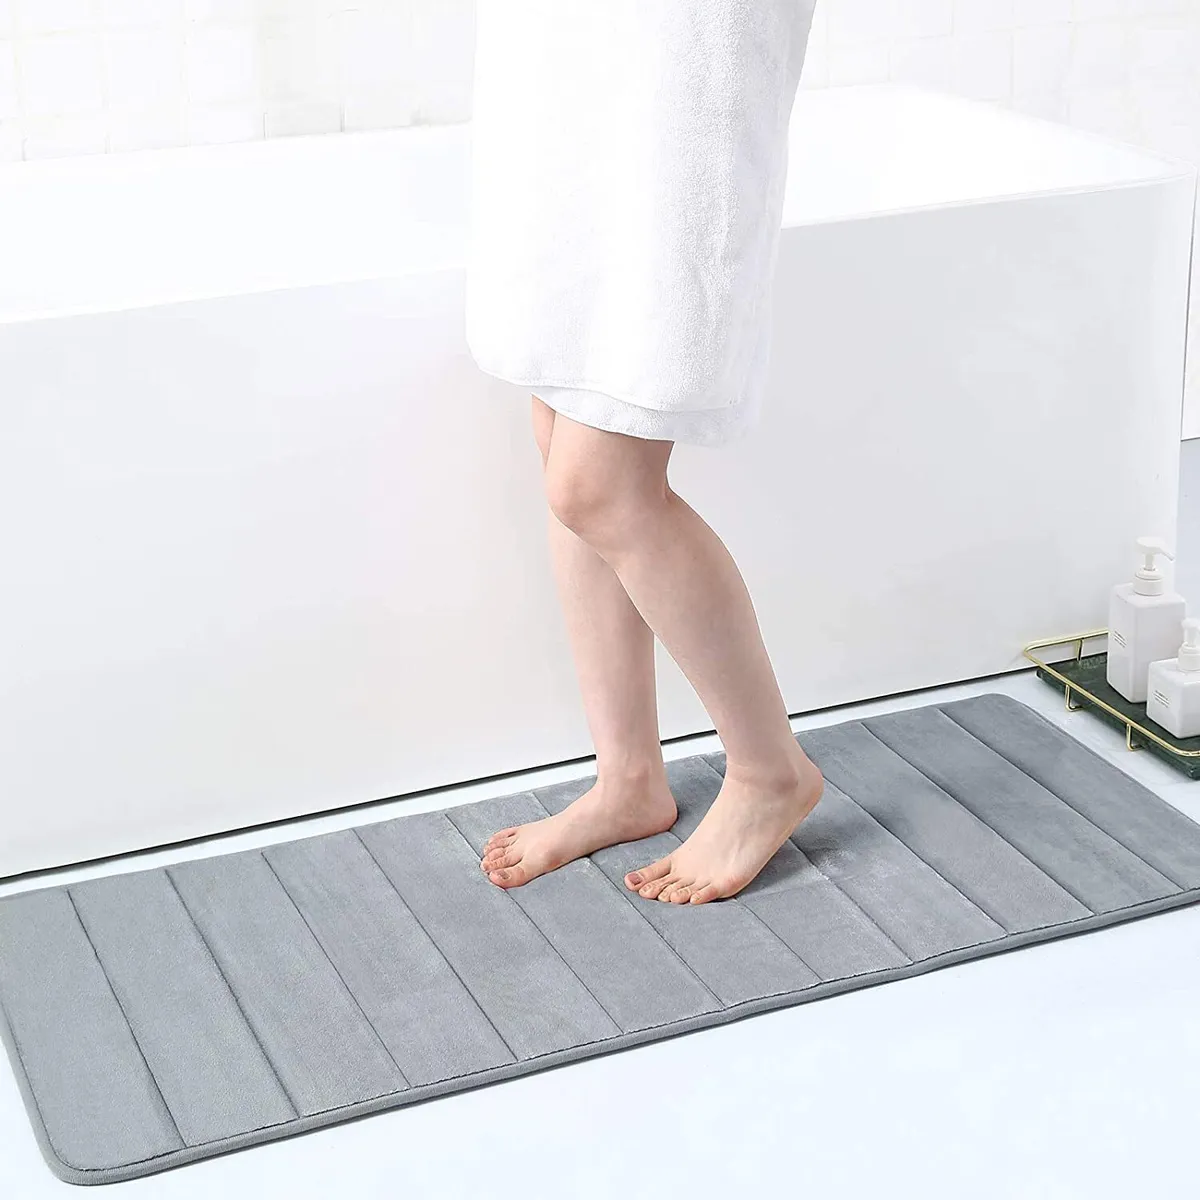 How To Make A Bath Mat Non-Slip